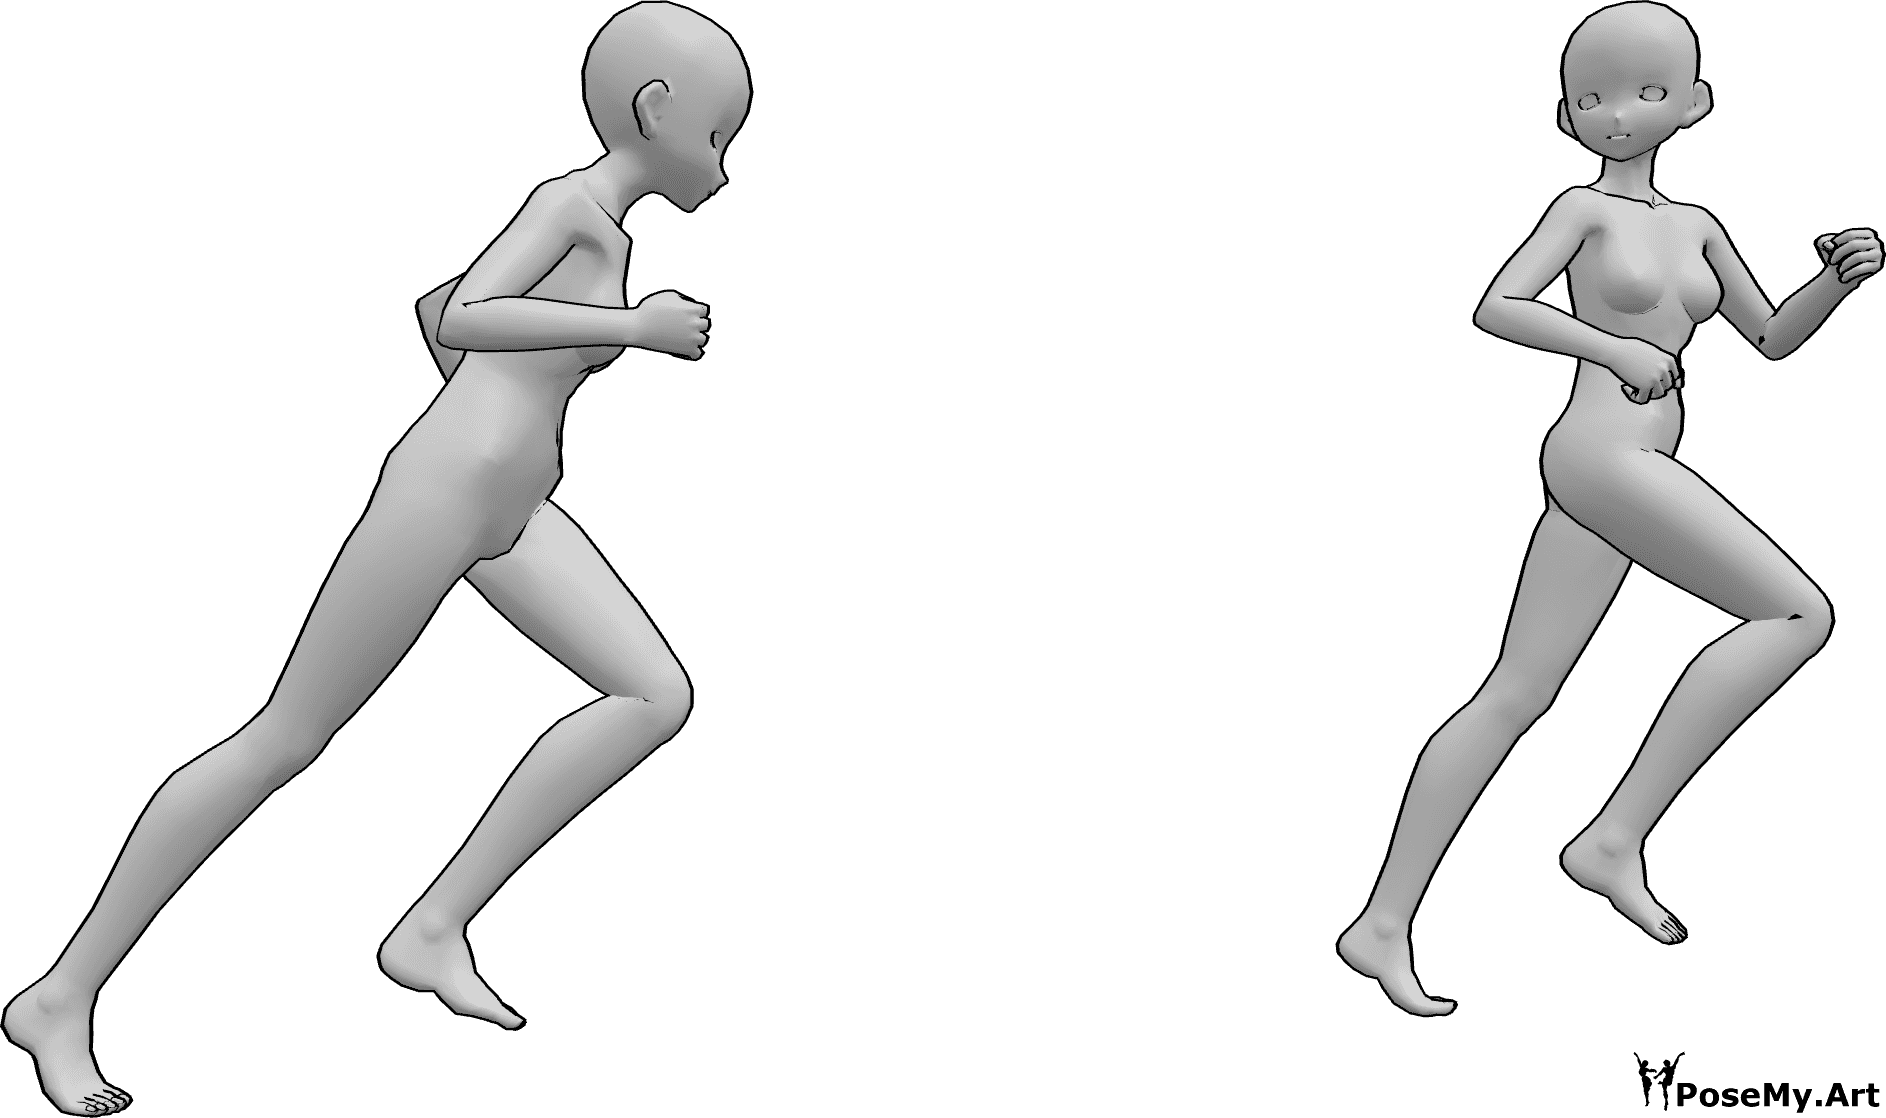 Riferimento alle pose- Anime che corrono in posa di inseguimento - Due femmine anime stanno correndo, una insegue l'altra, che si guarda indietro mentre scappa